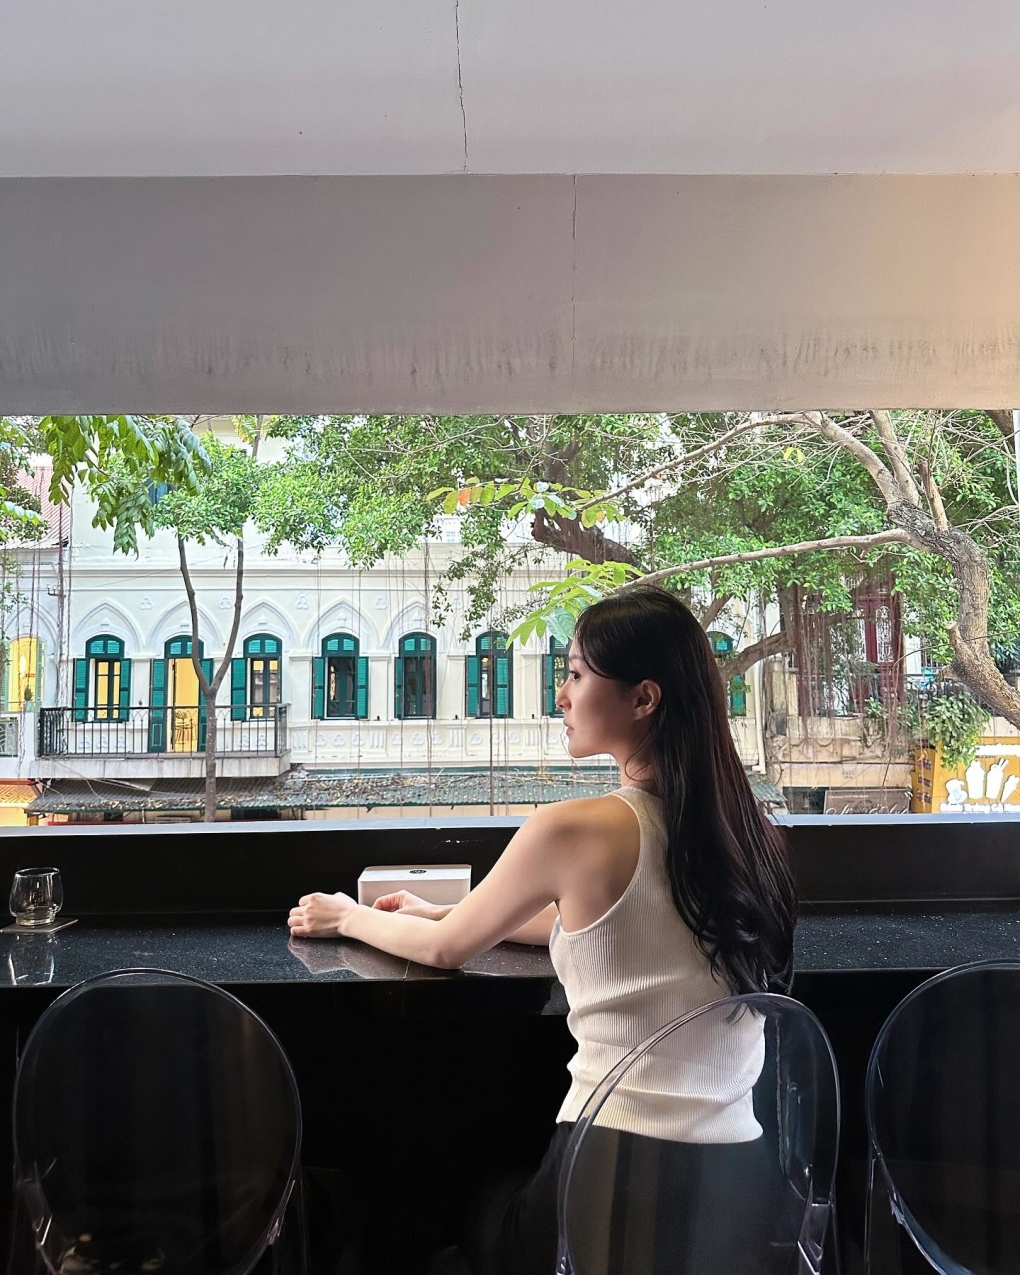 Thiệu Sơ dừng chân uống nước tại một quán cà phê phố Nhà Thờ, với tầm nhìn sang tòa nhà Pháp cổ kính. 